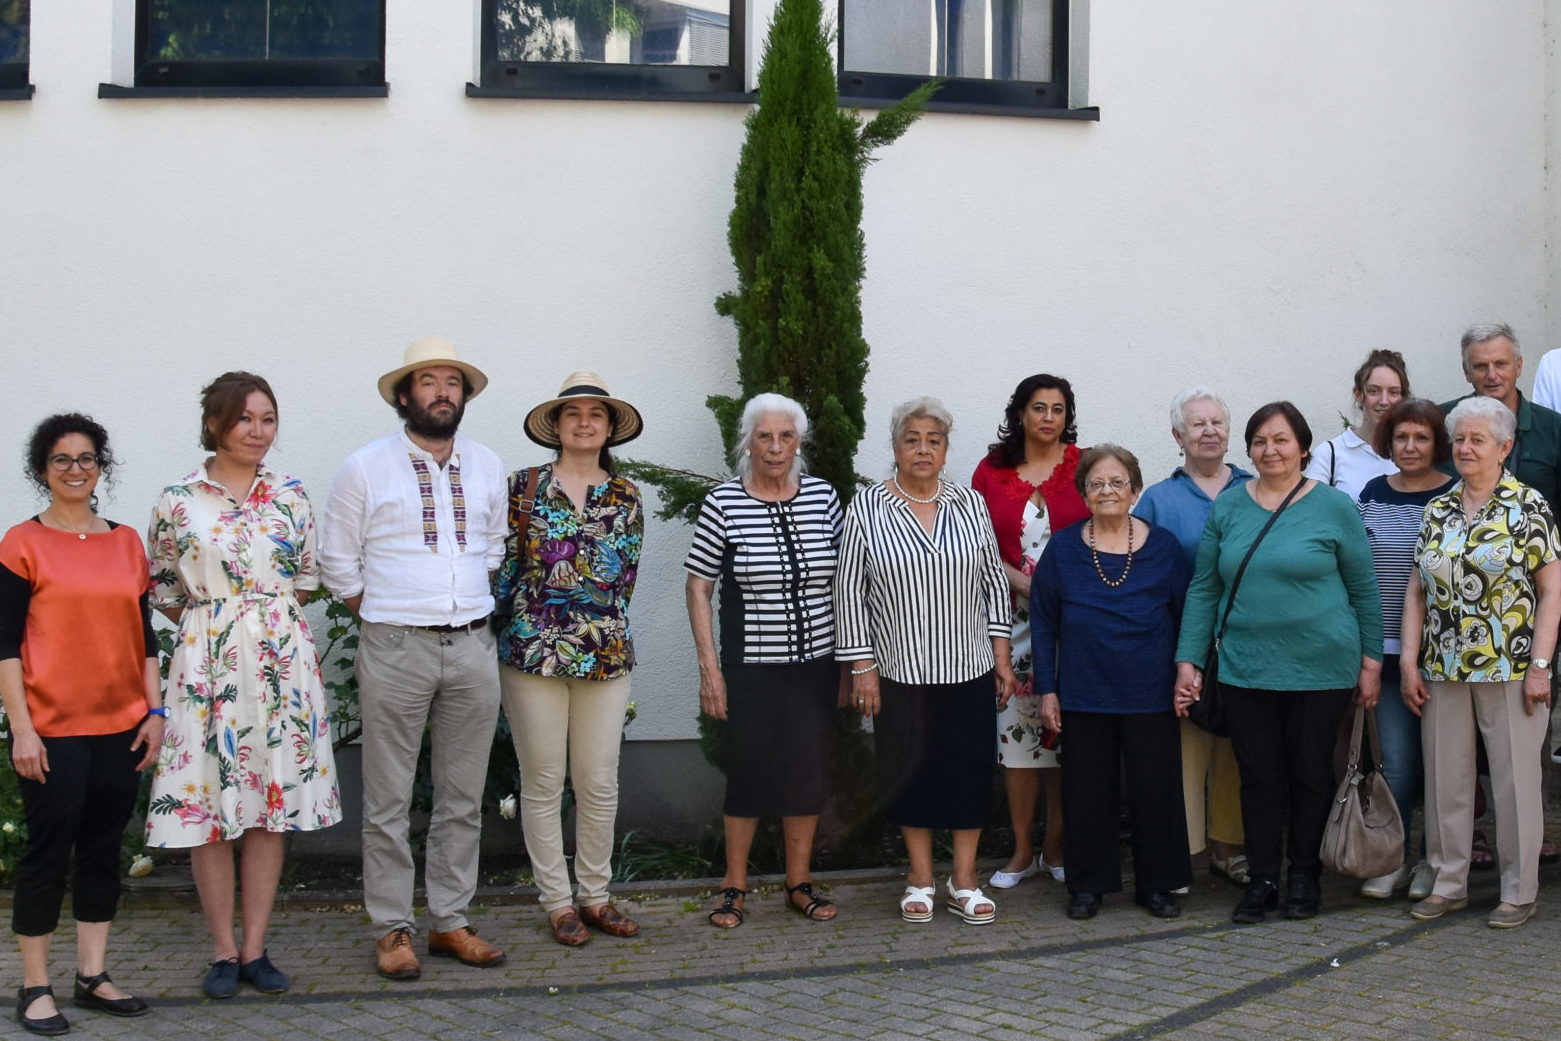 25 Menschen unterschiedlichen Alters bei einem Gruppenfoto vor der Jüdischen Kultusgemeinde in Heidelberg.